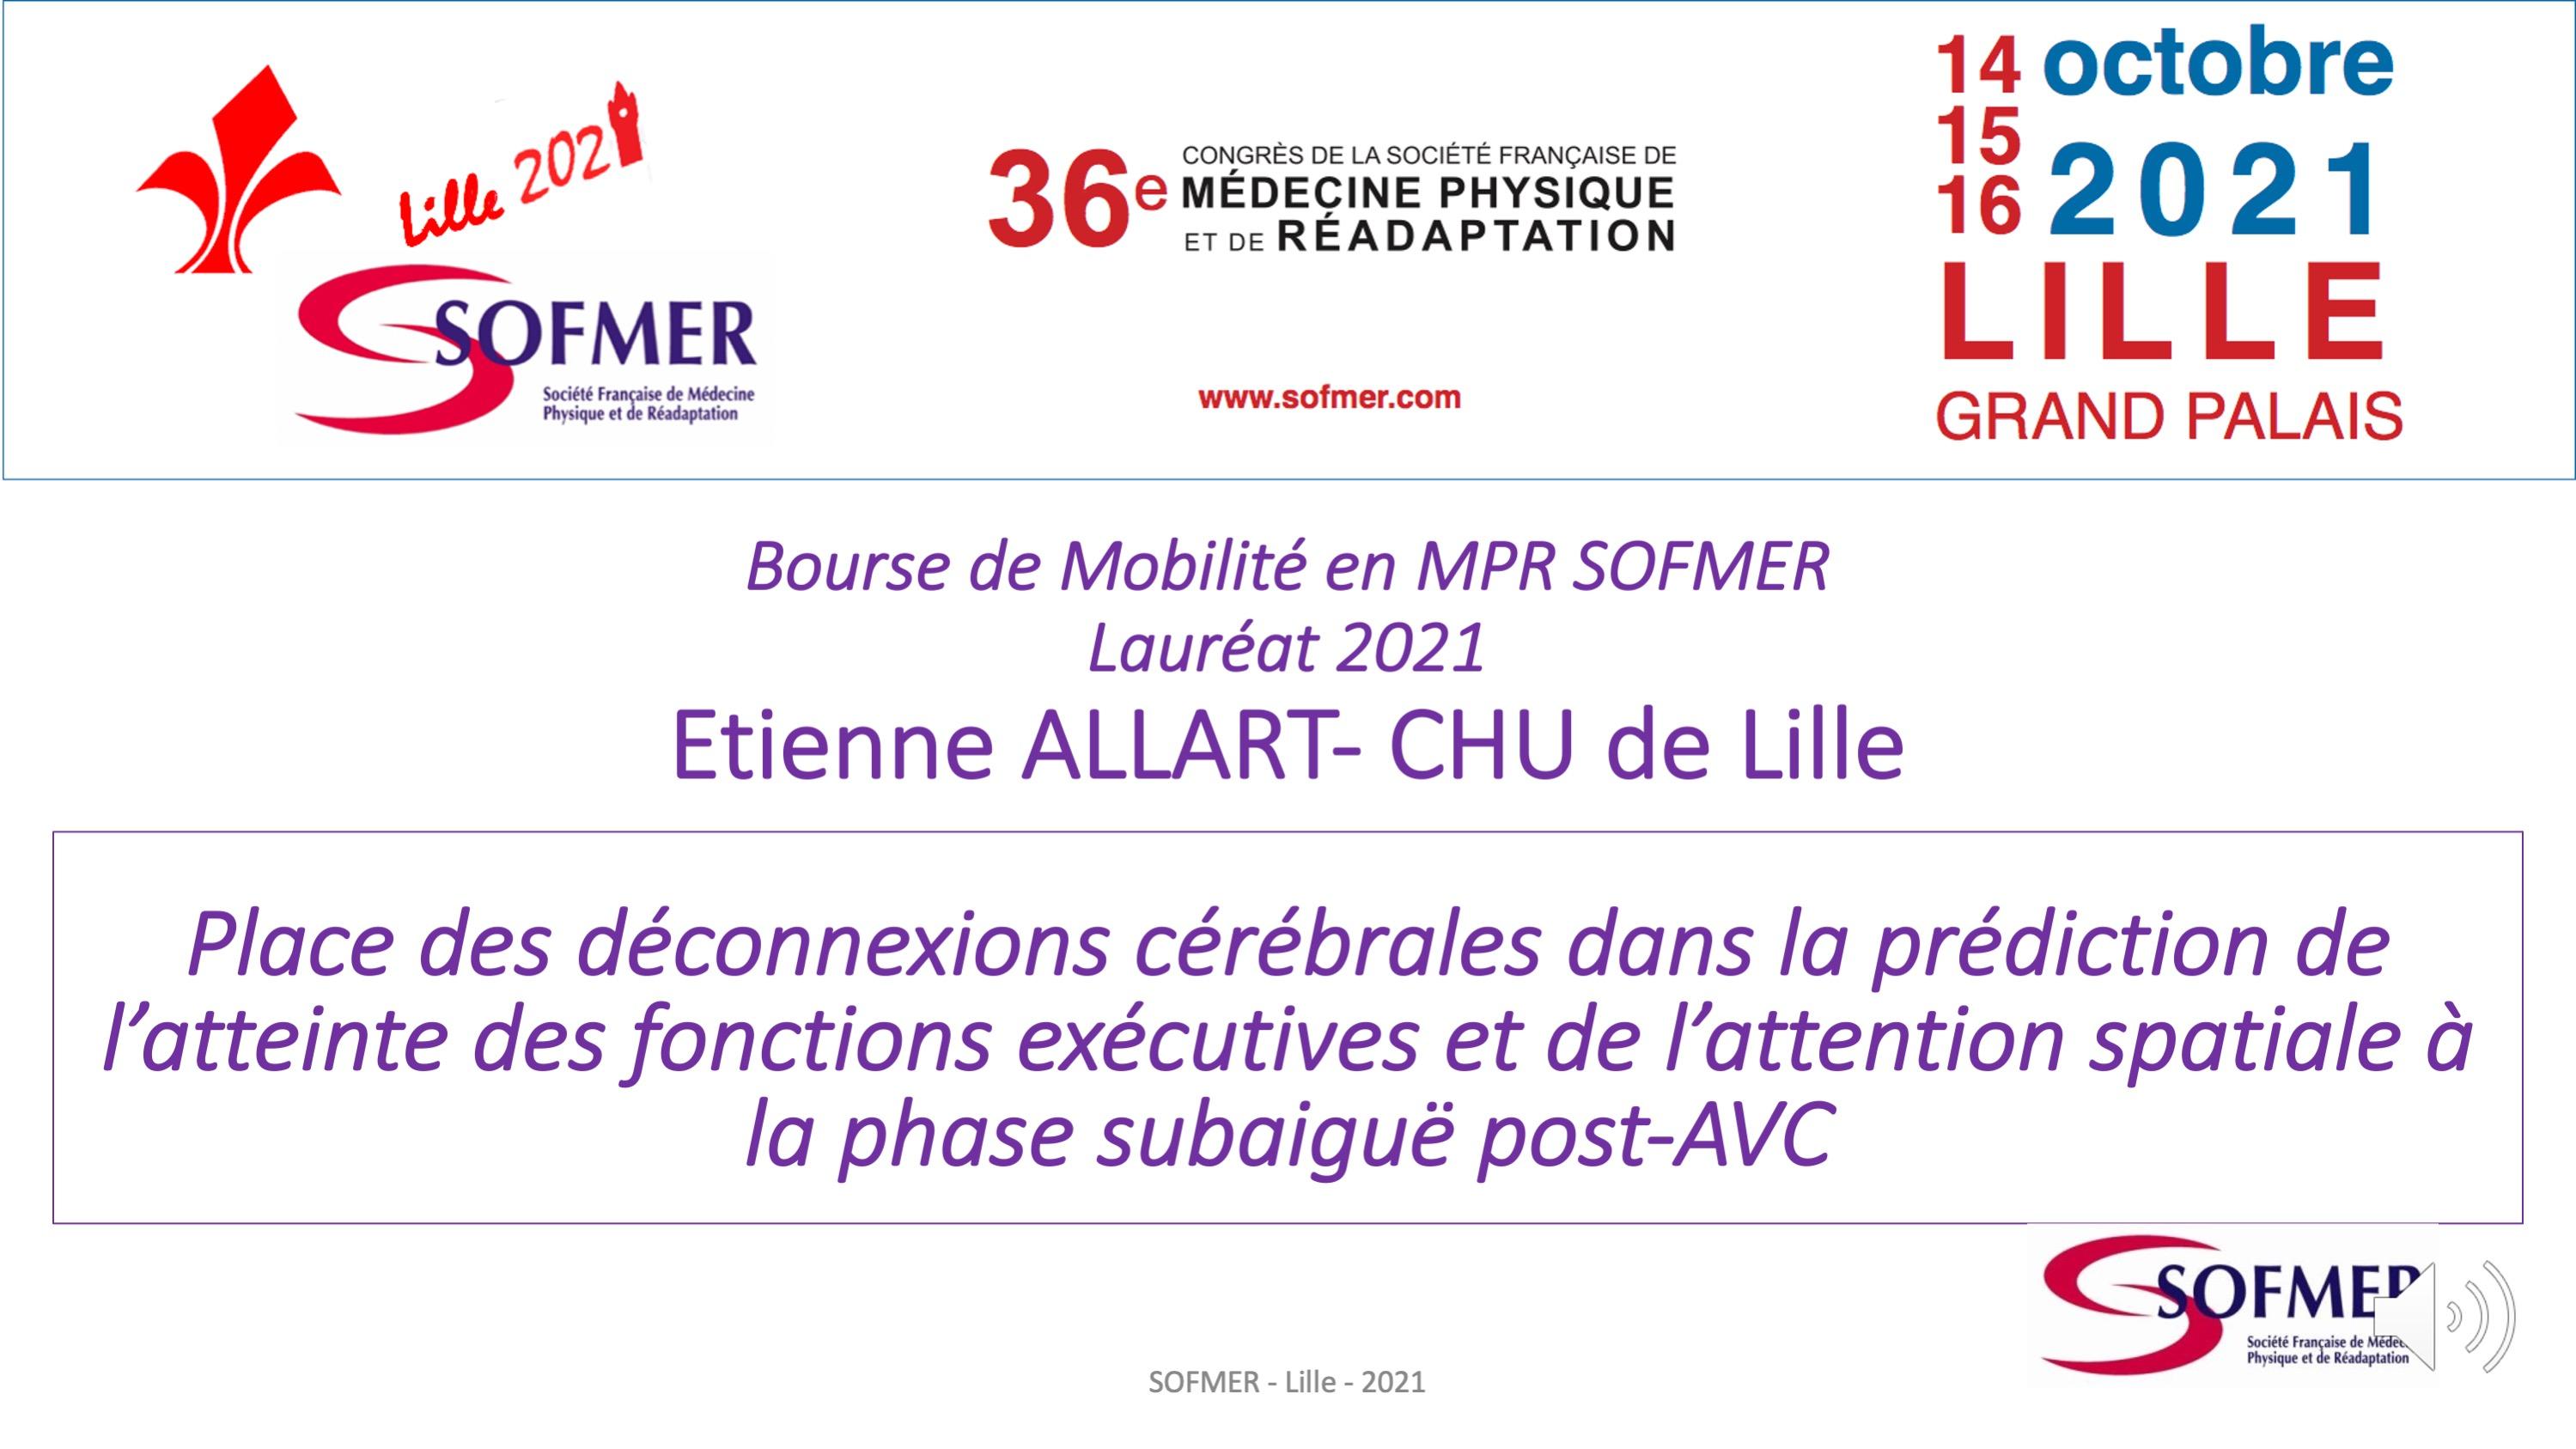 Bourse de Mobilité SOFMER - Lauréat 2021 - Etienne ALLART